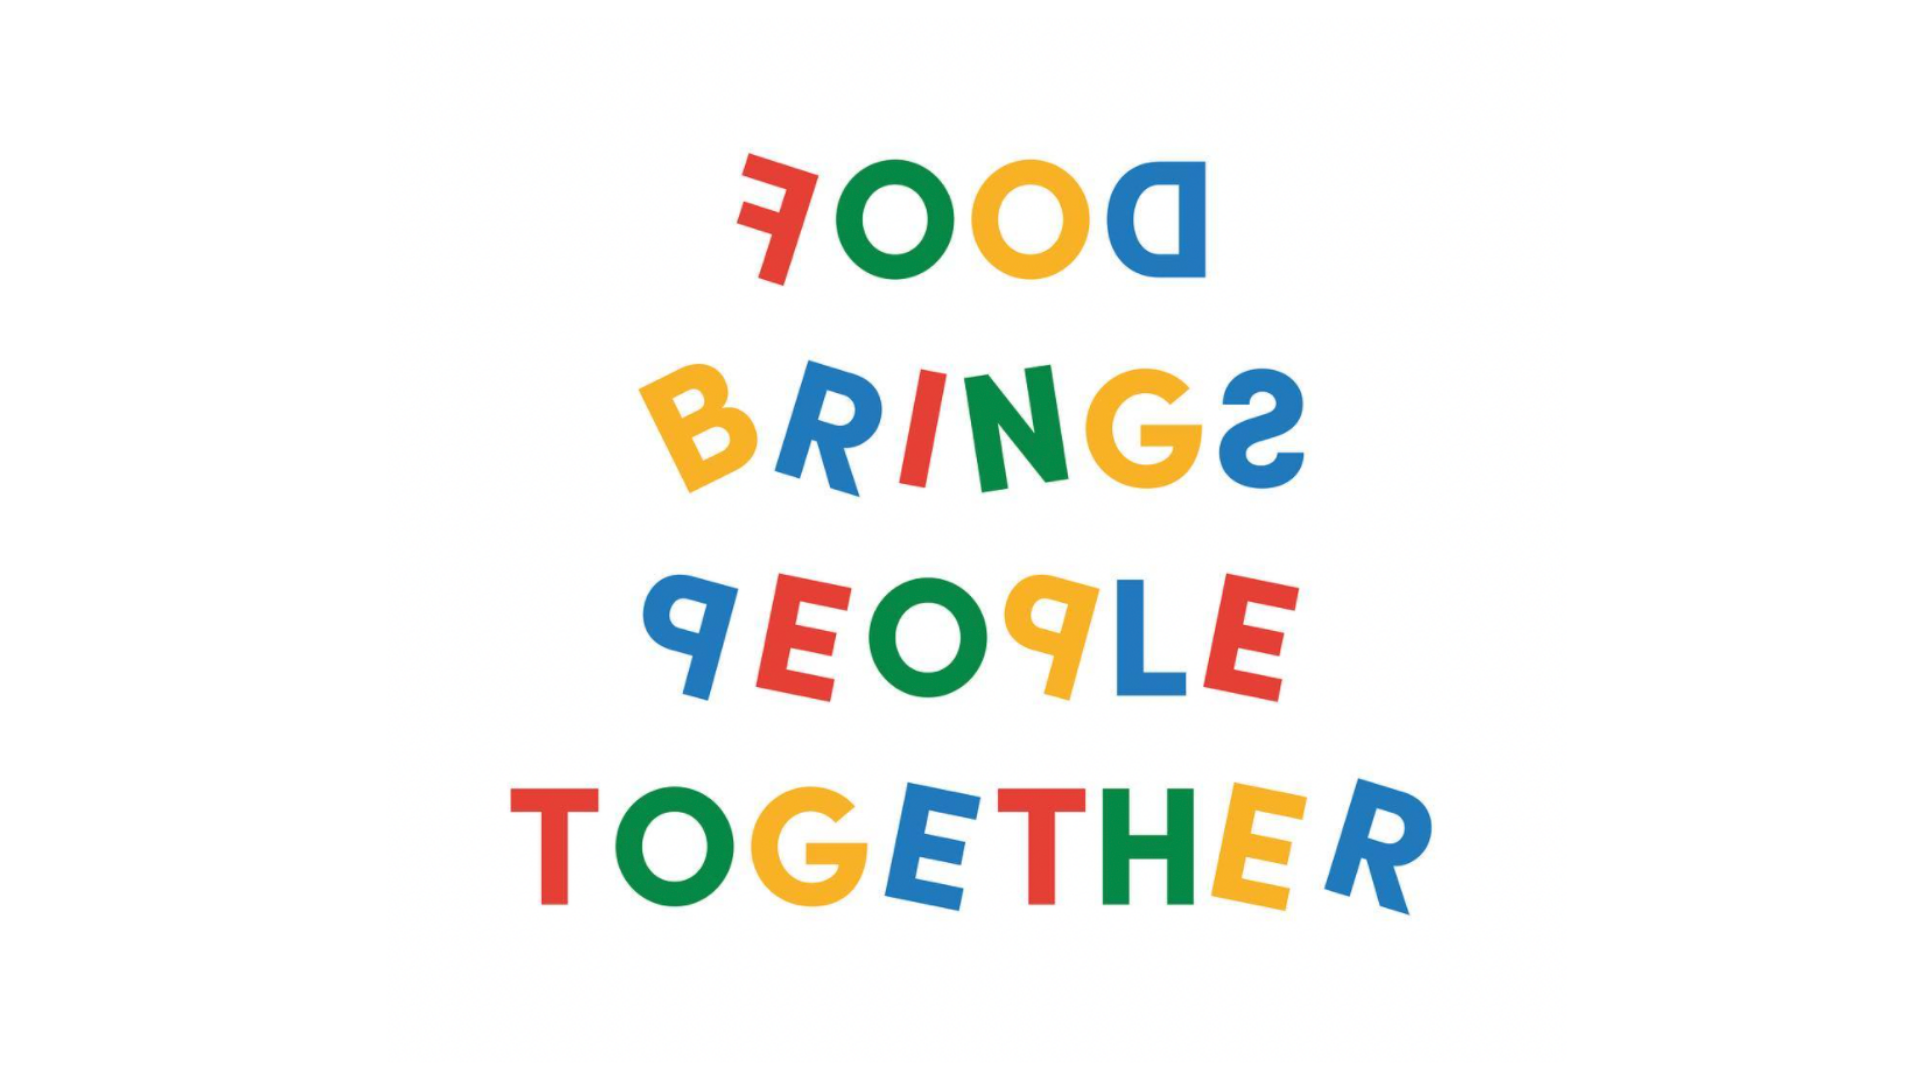 Rocío Egío: “Food Brings People Together”